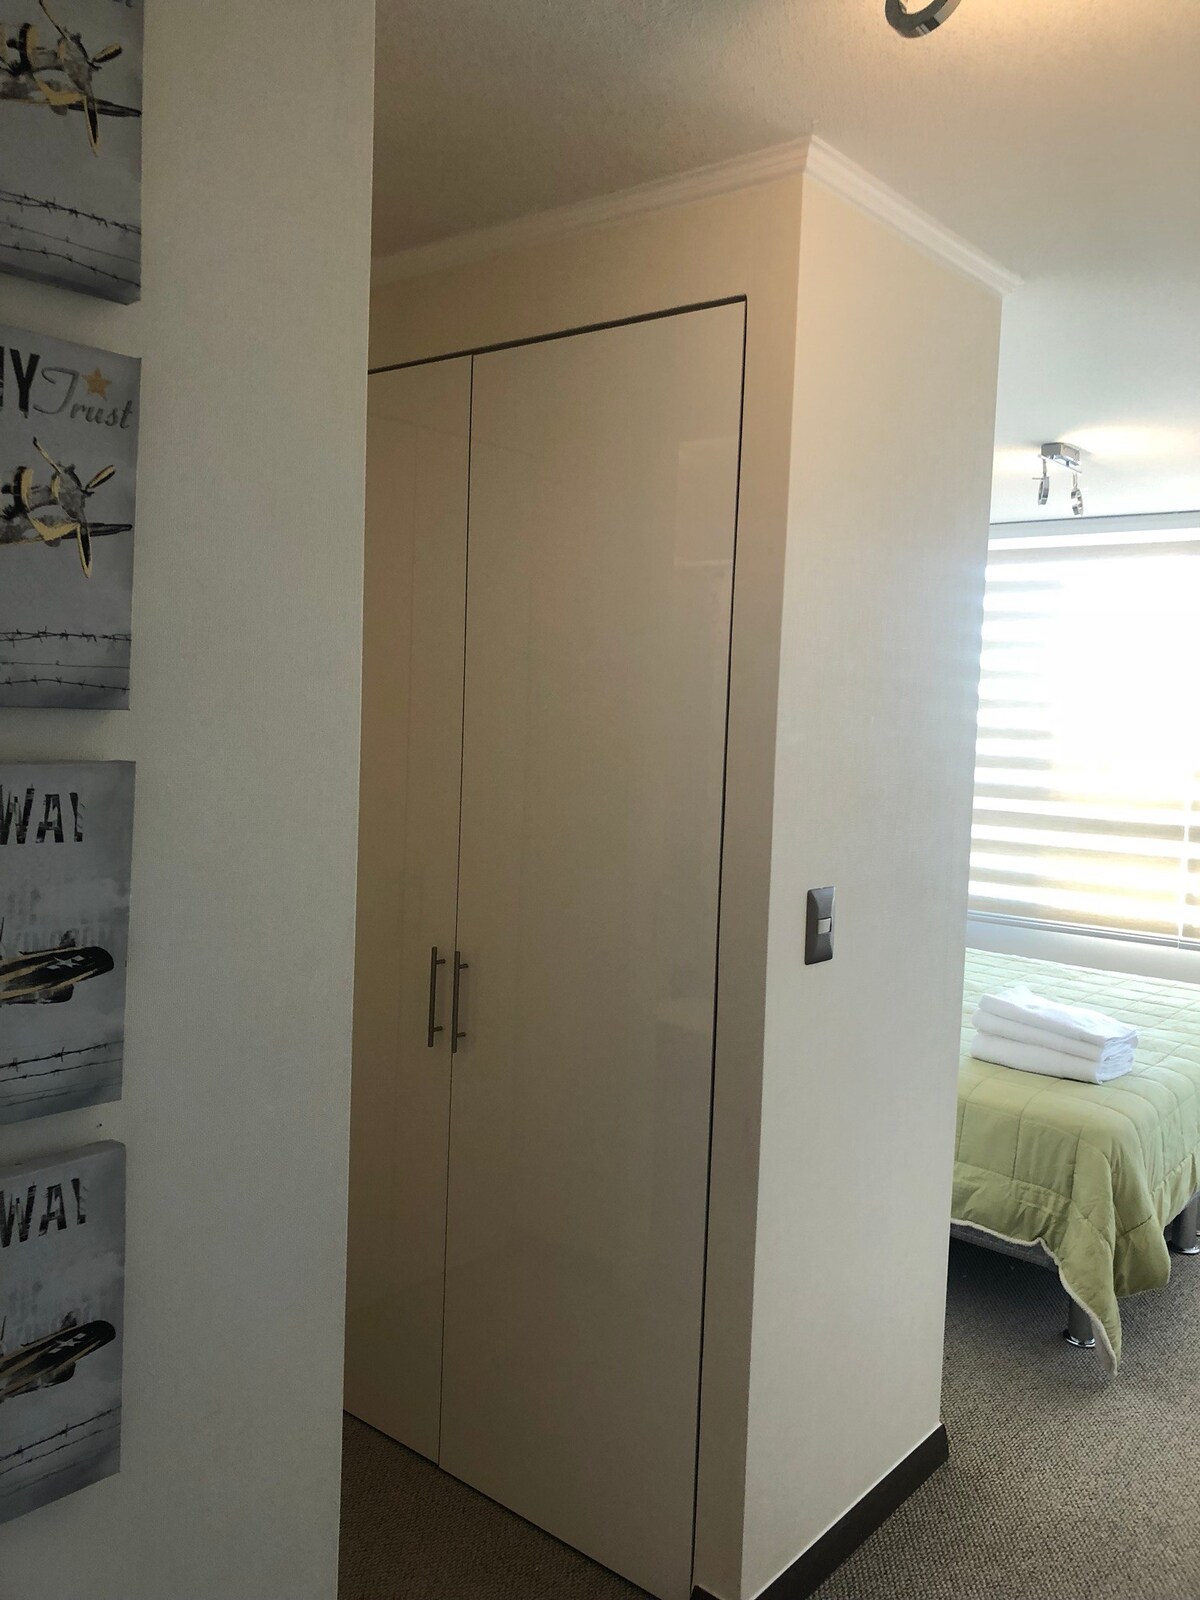 优秀的公寓Viña del Mar 2房间2个卫生间全新